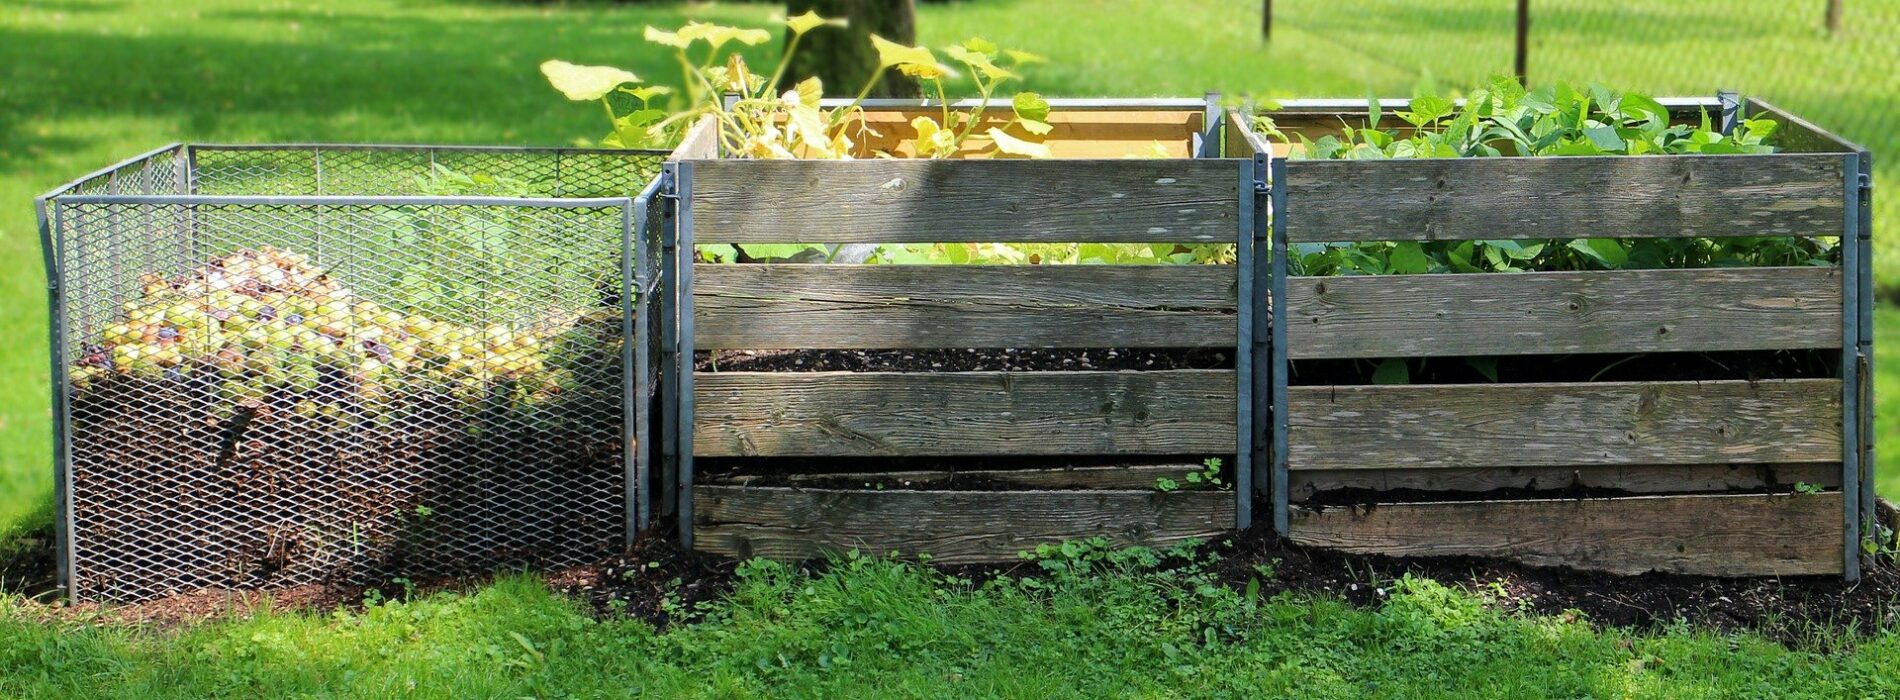 Kompostownik ogrodowy: jak założyć kompostownik w ogrodzie?